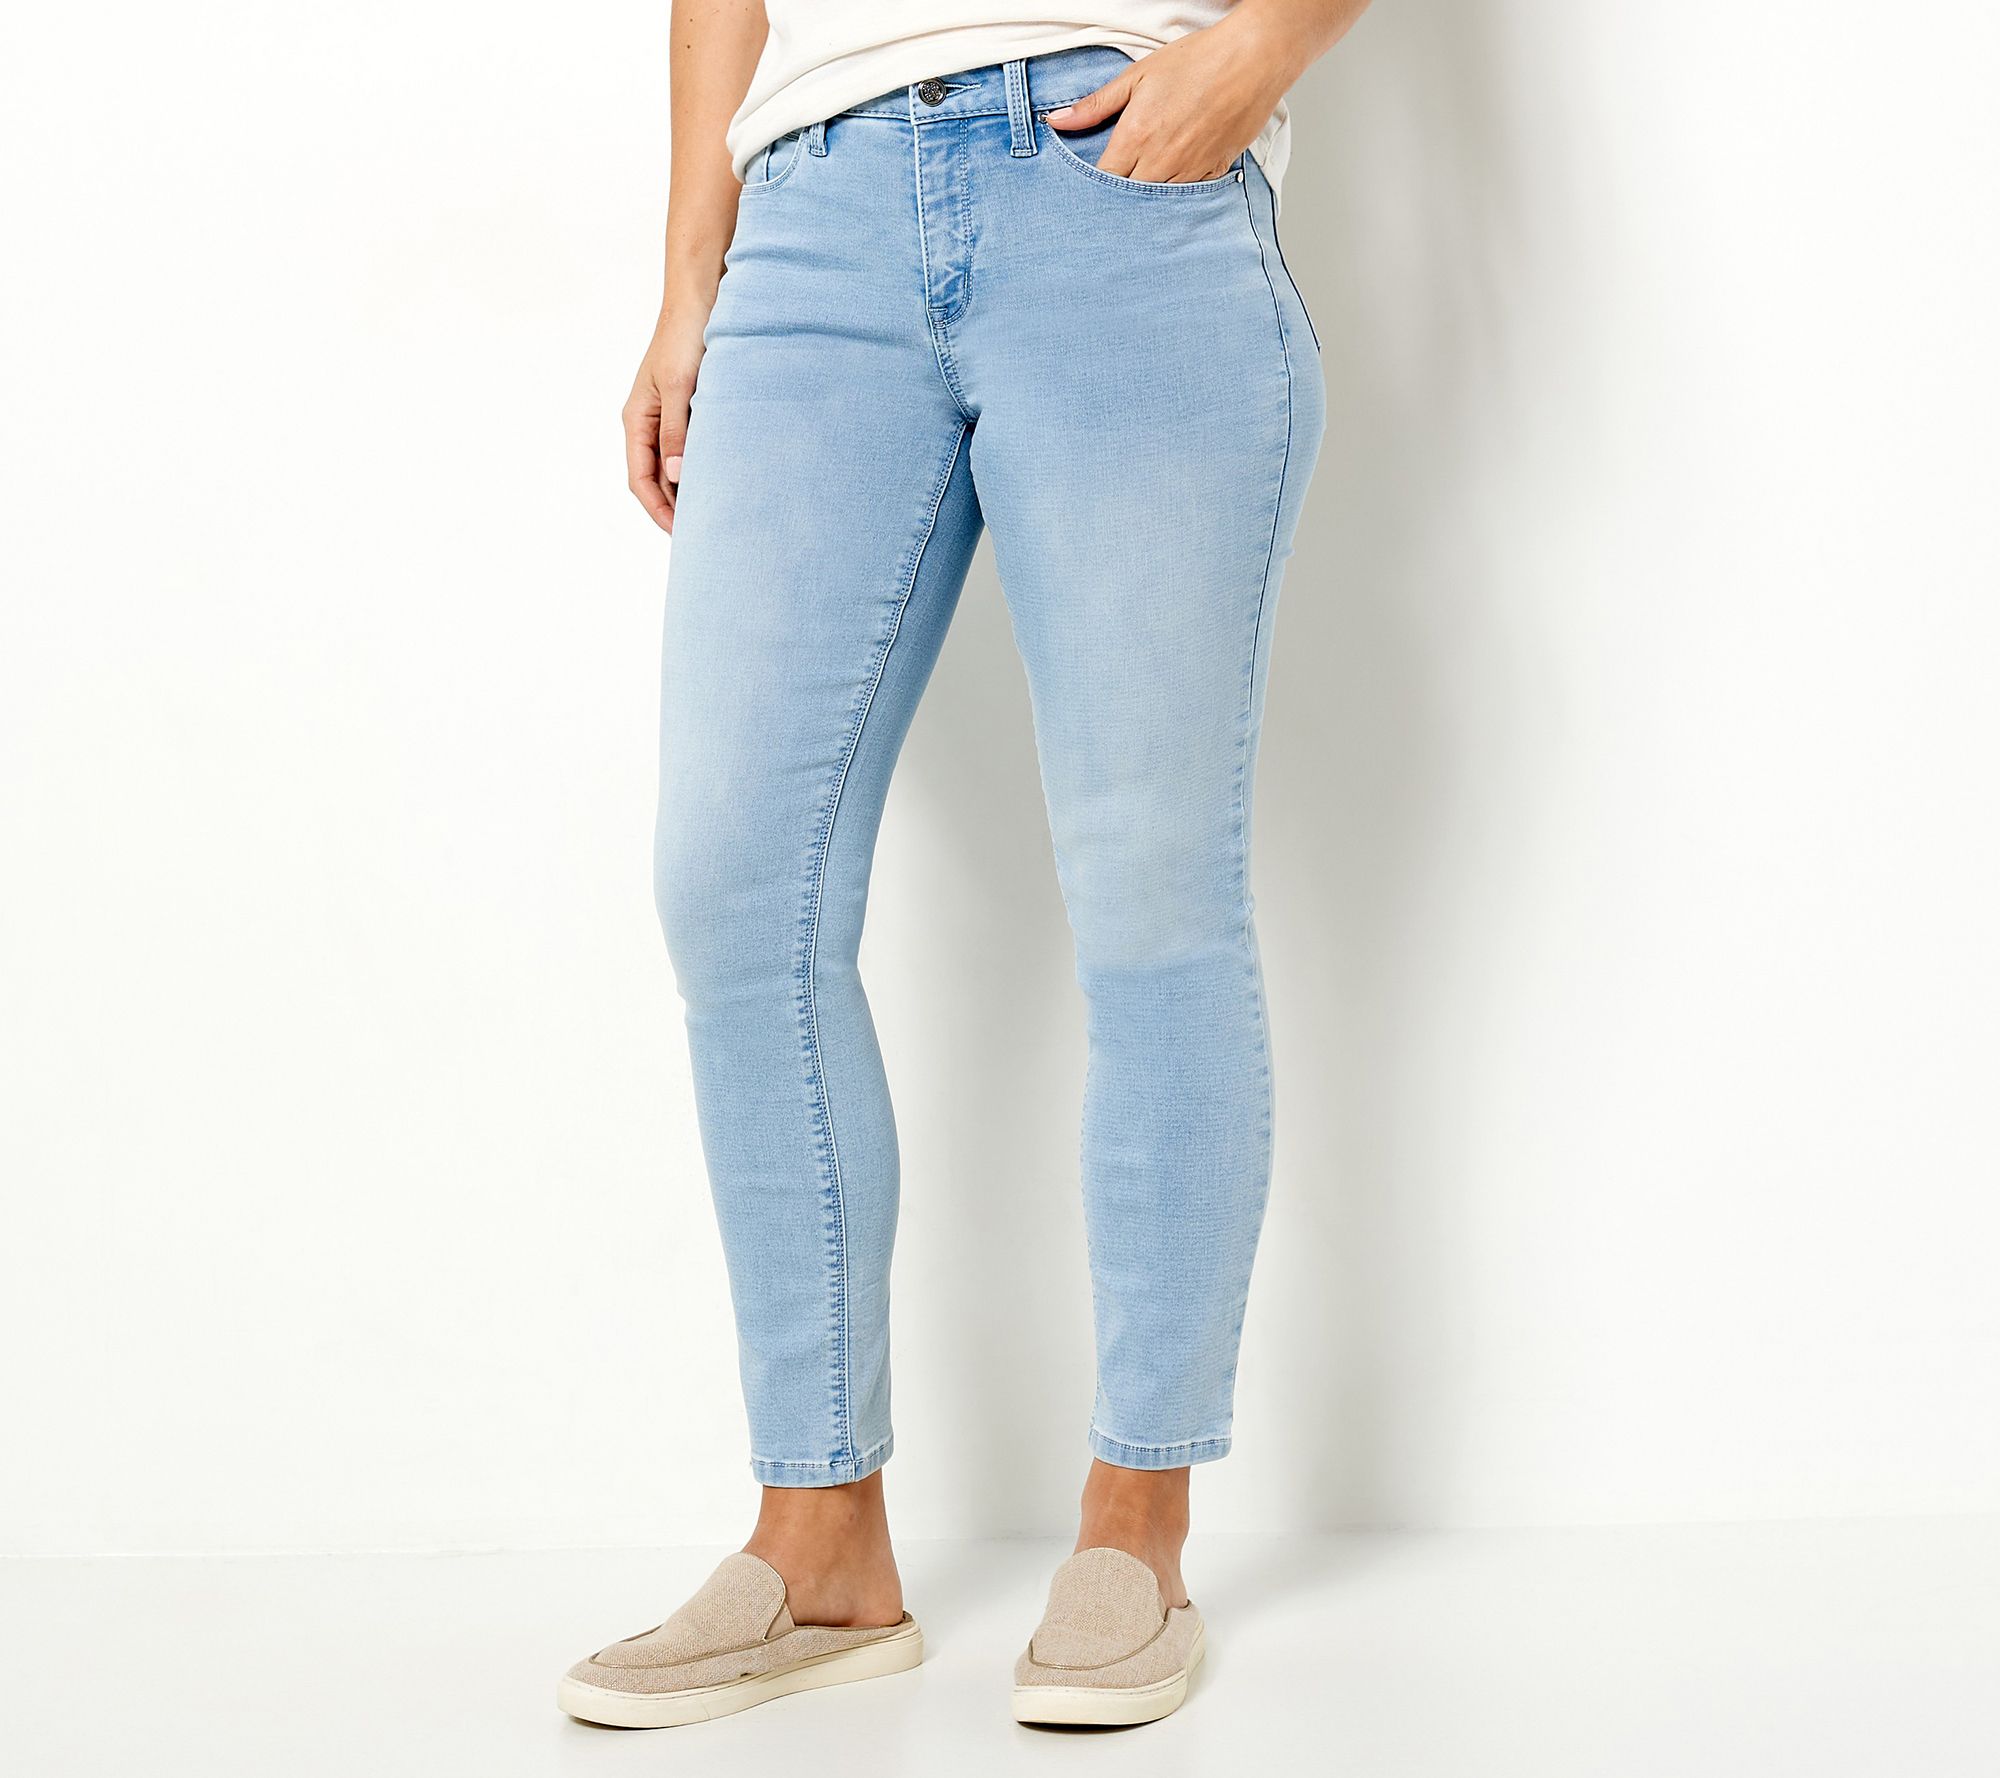 Laurie Felt Petite Slim-Leg Knit Clean Jeans - QVC.com